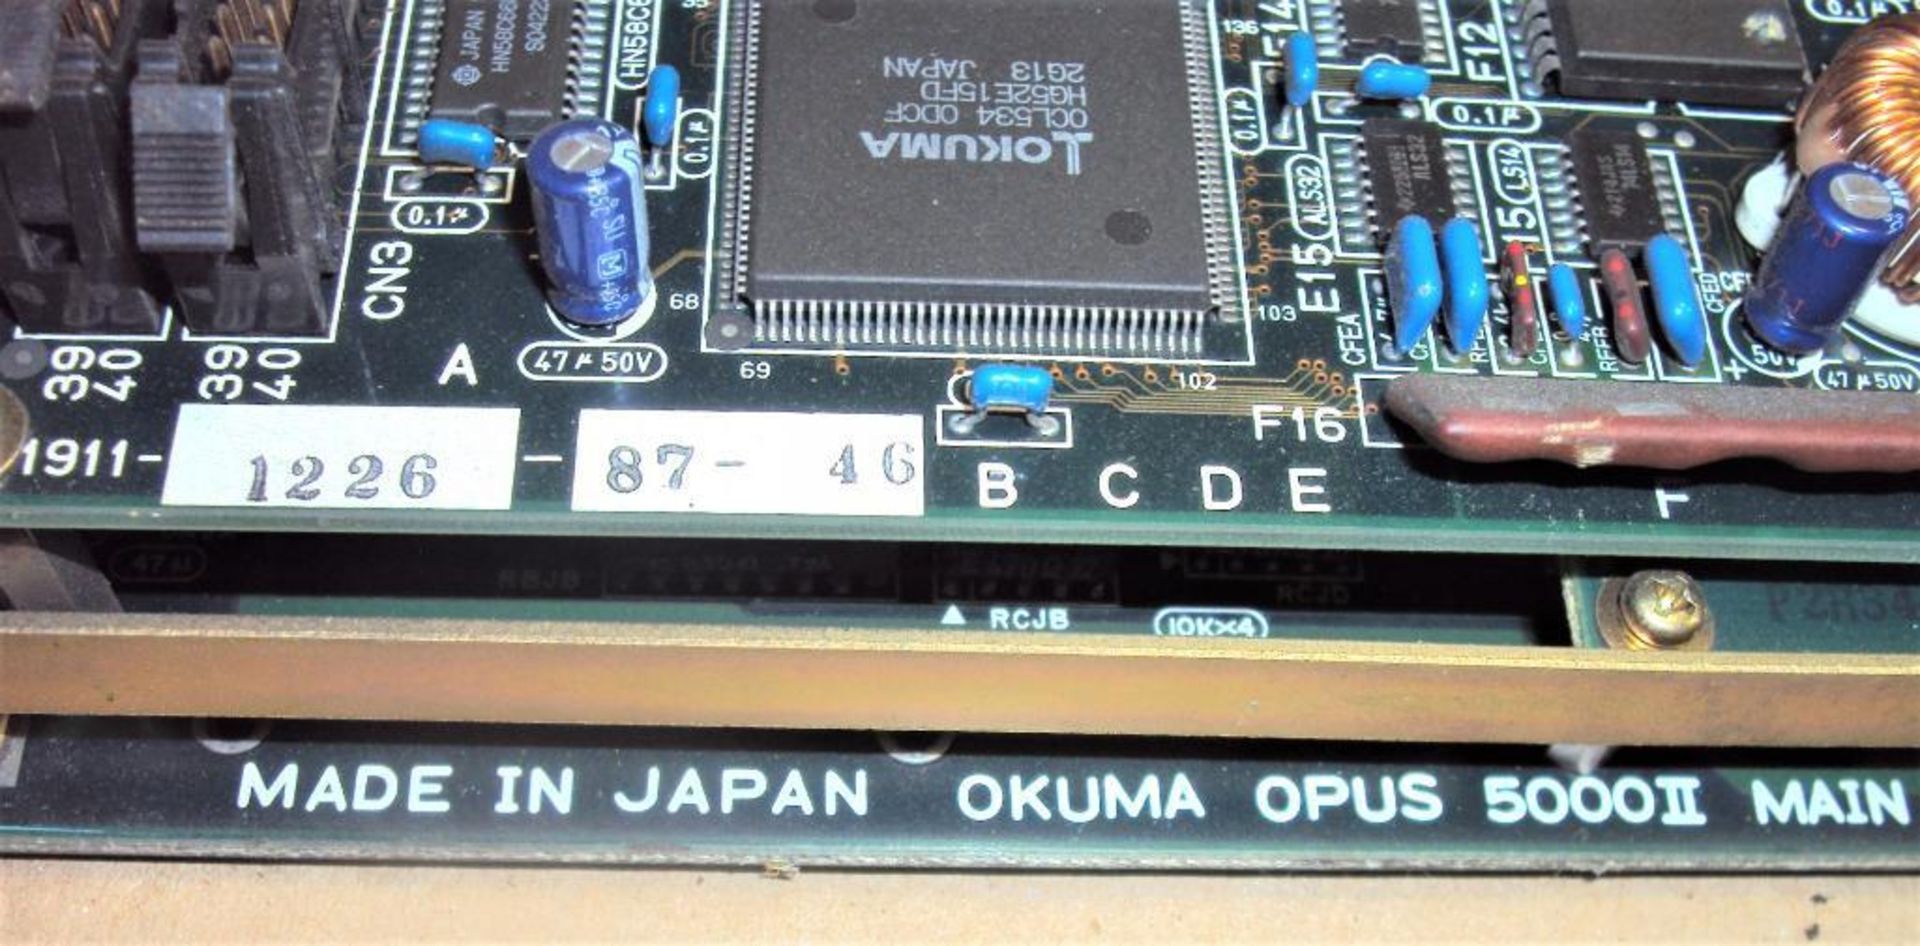 Okuma Opus 5000II E4809-045-091-E Main Board IIE w/ E4809-045-146-B Bubble Memory Card & E4809-045-1 - Image 7 of 8